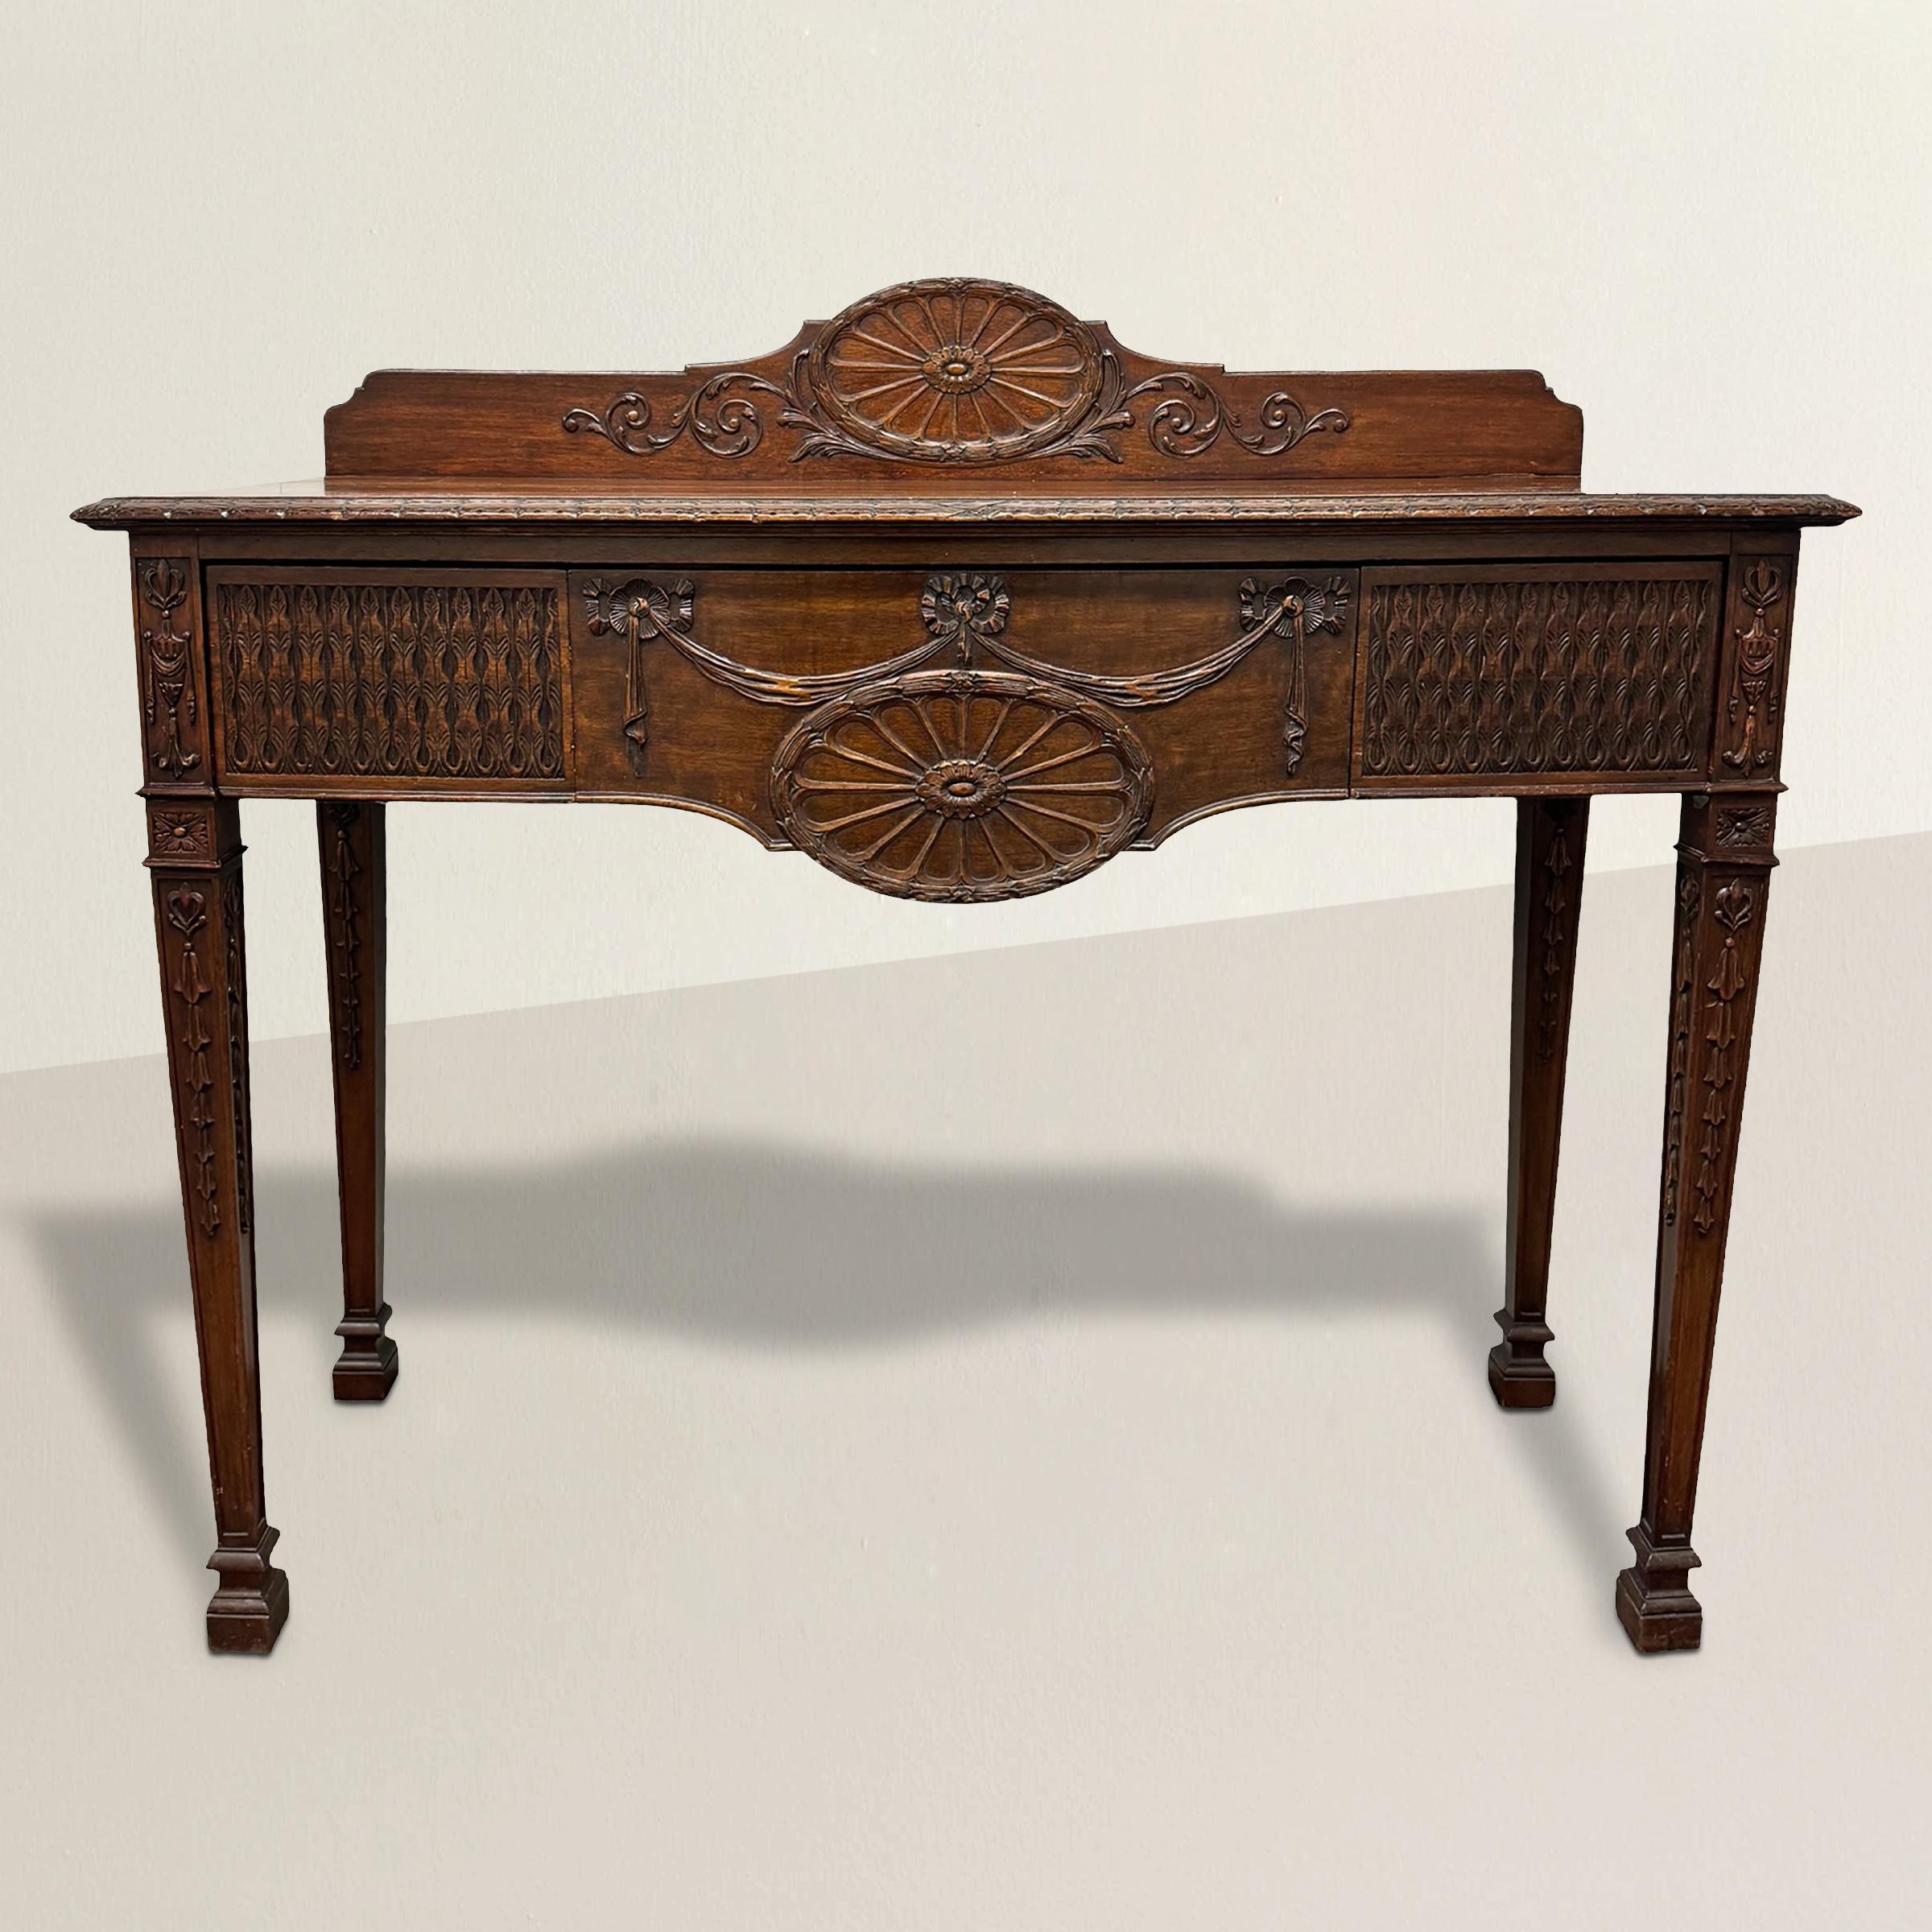 Fabriquée dans la tradition raffinée du style Adams, cette console en acajou anglais du XIXe siècle respire l'élégance intemporelle et la sophistication classique. La traverse arrière est ornée d'un grand médaillon en forme de couronne de laurier,